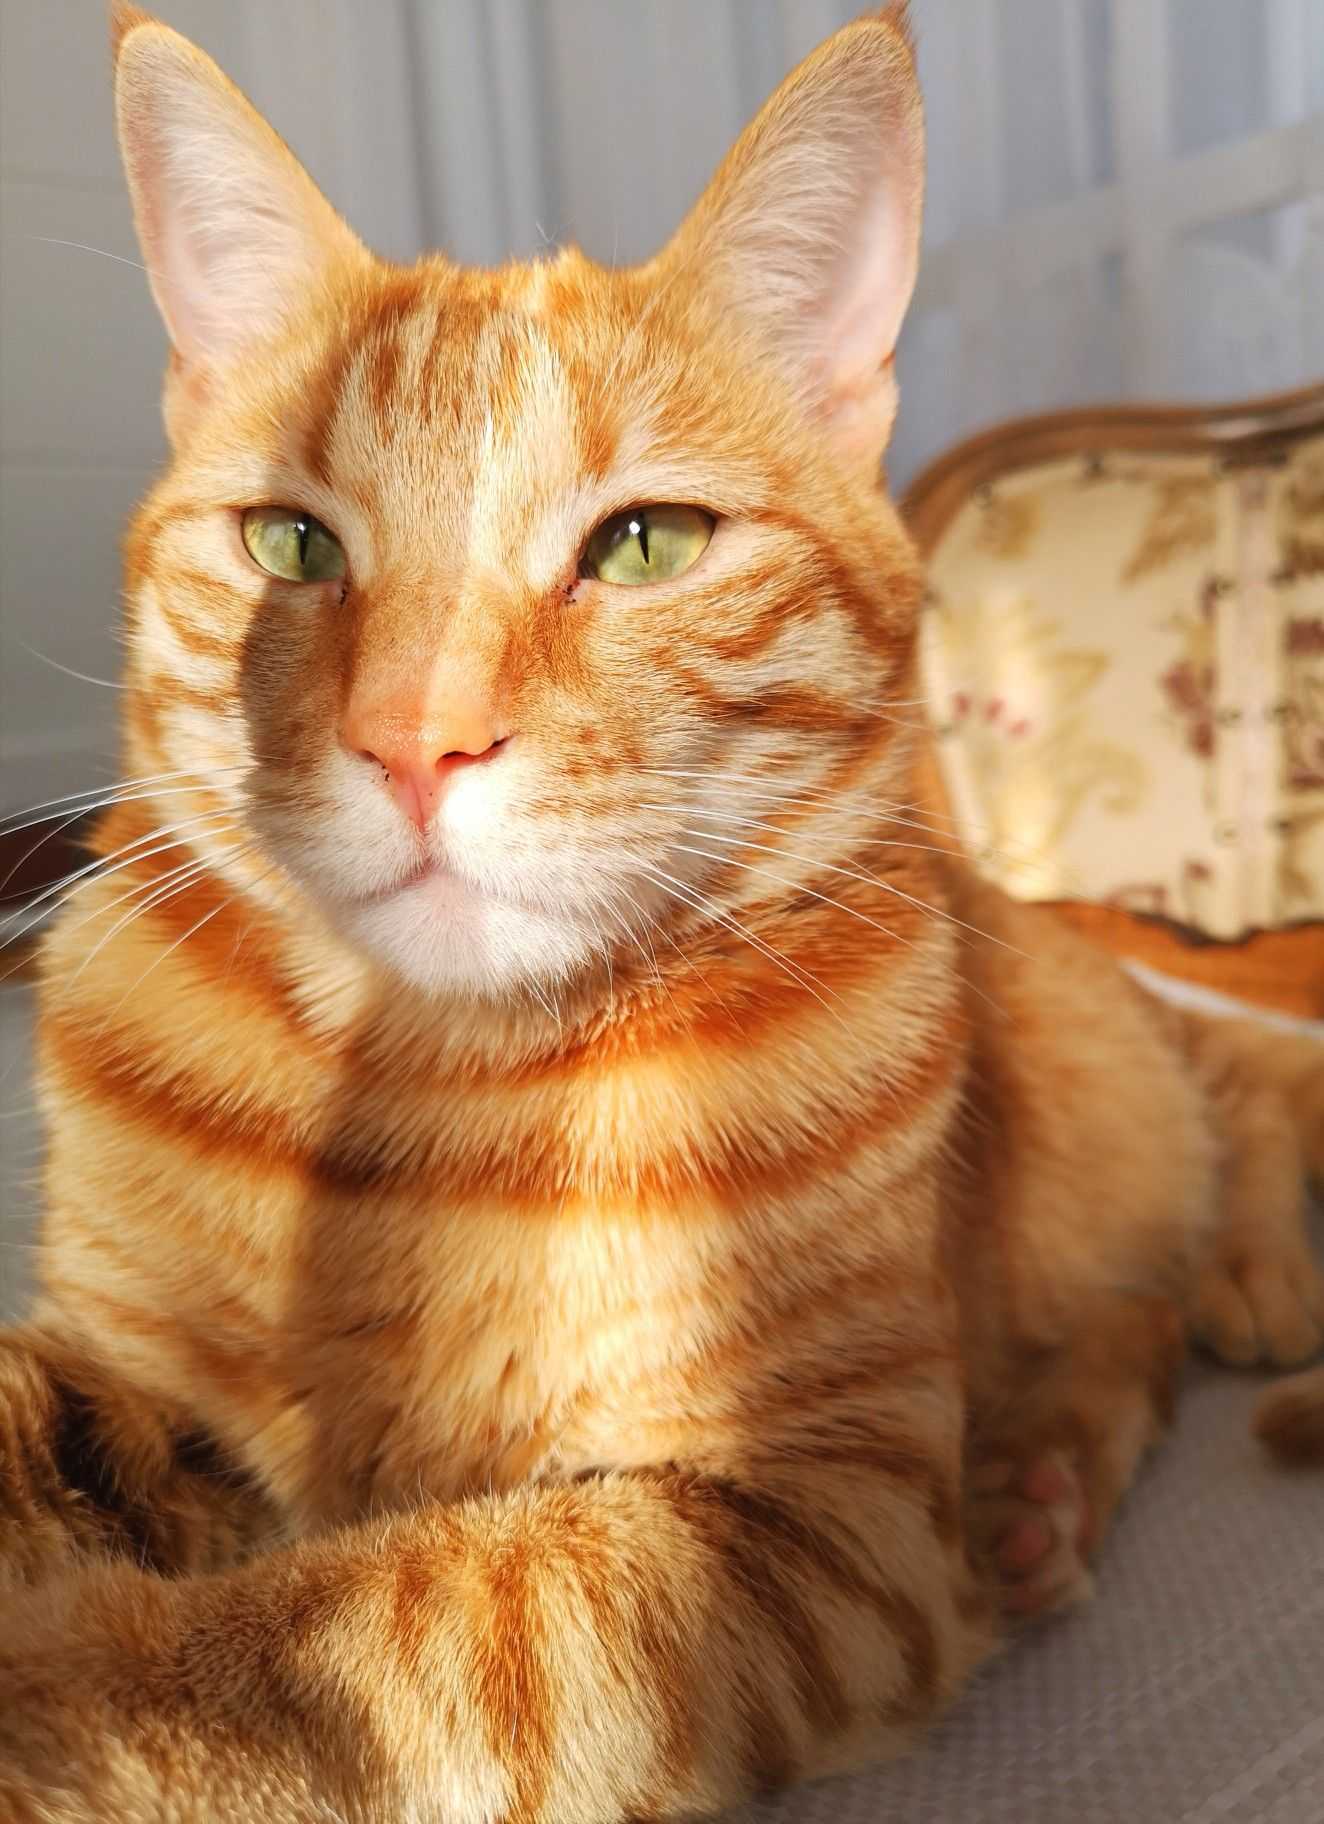 Рыжая полосатая кошка. Тигровый макрелевый табби рыжий. Европейская короткошерстная табби рыжий. Европейская короткошерстная кошка рыжая. Европейский короткошерстный кот рыжий.